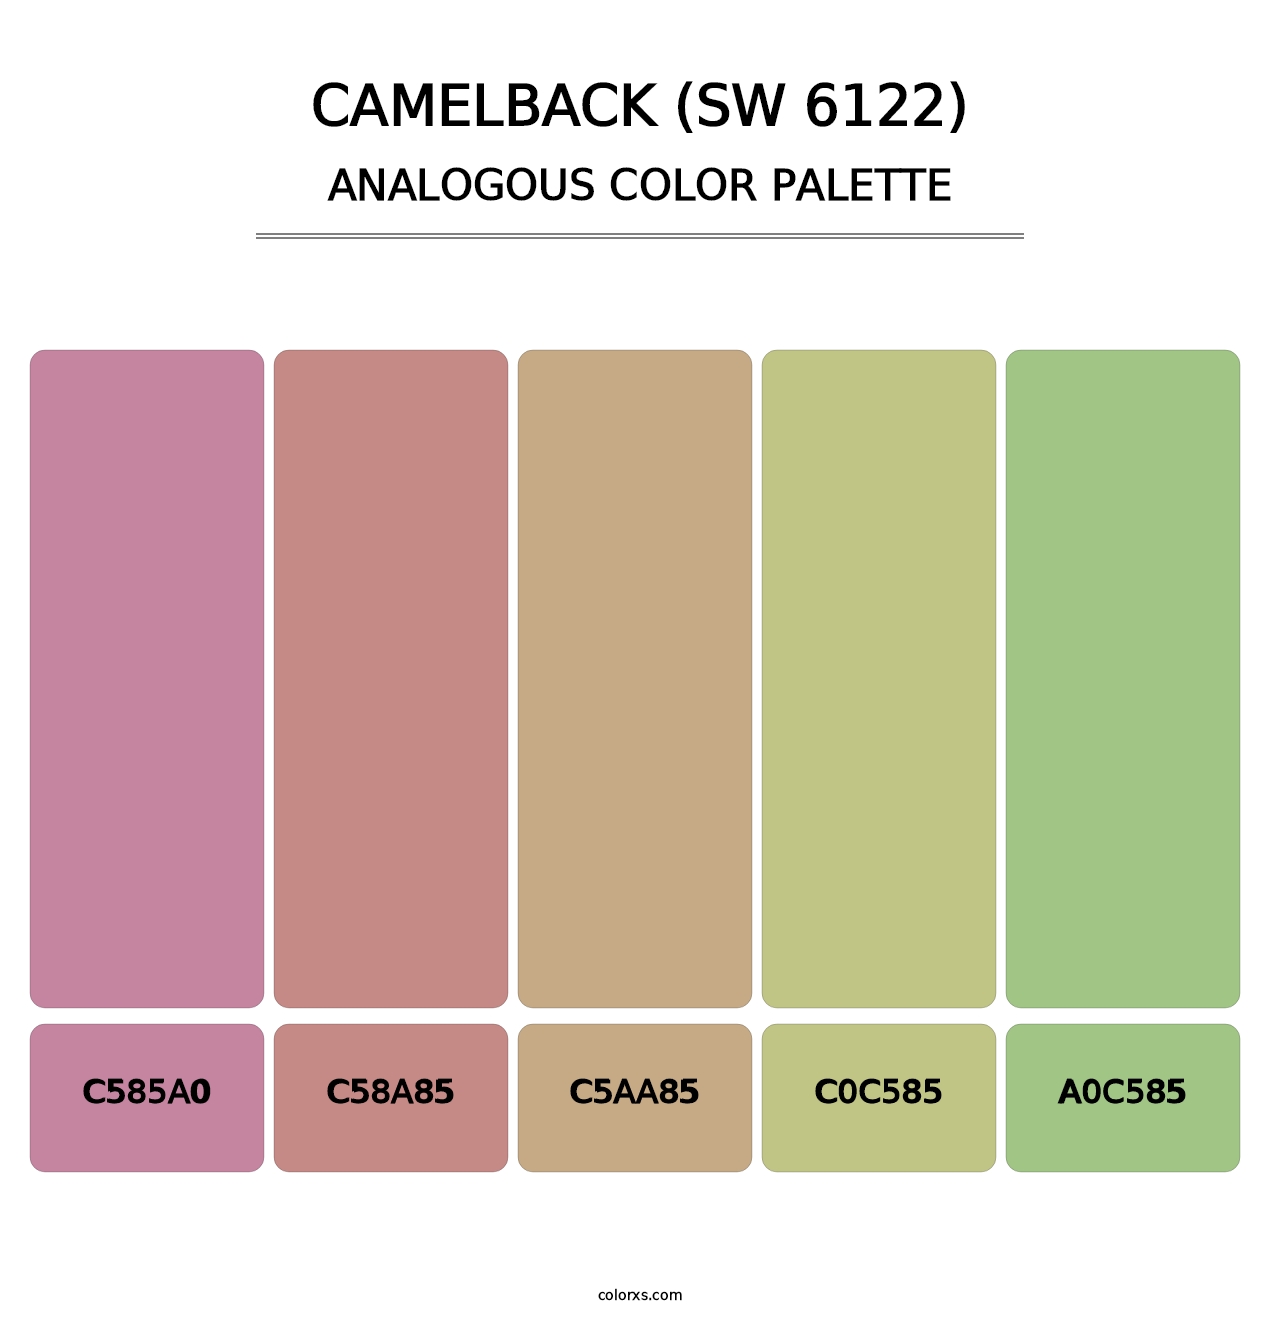 Camelback (SW 6122) - Analogous Color Palette